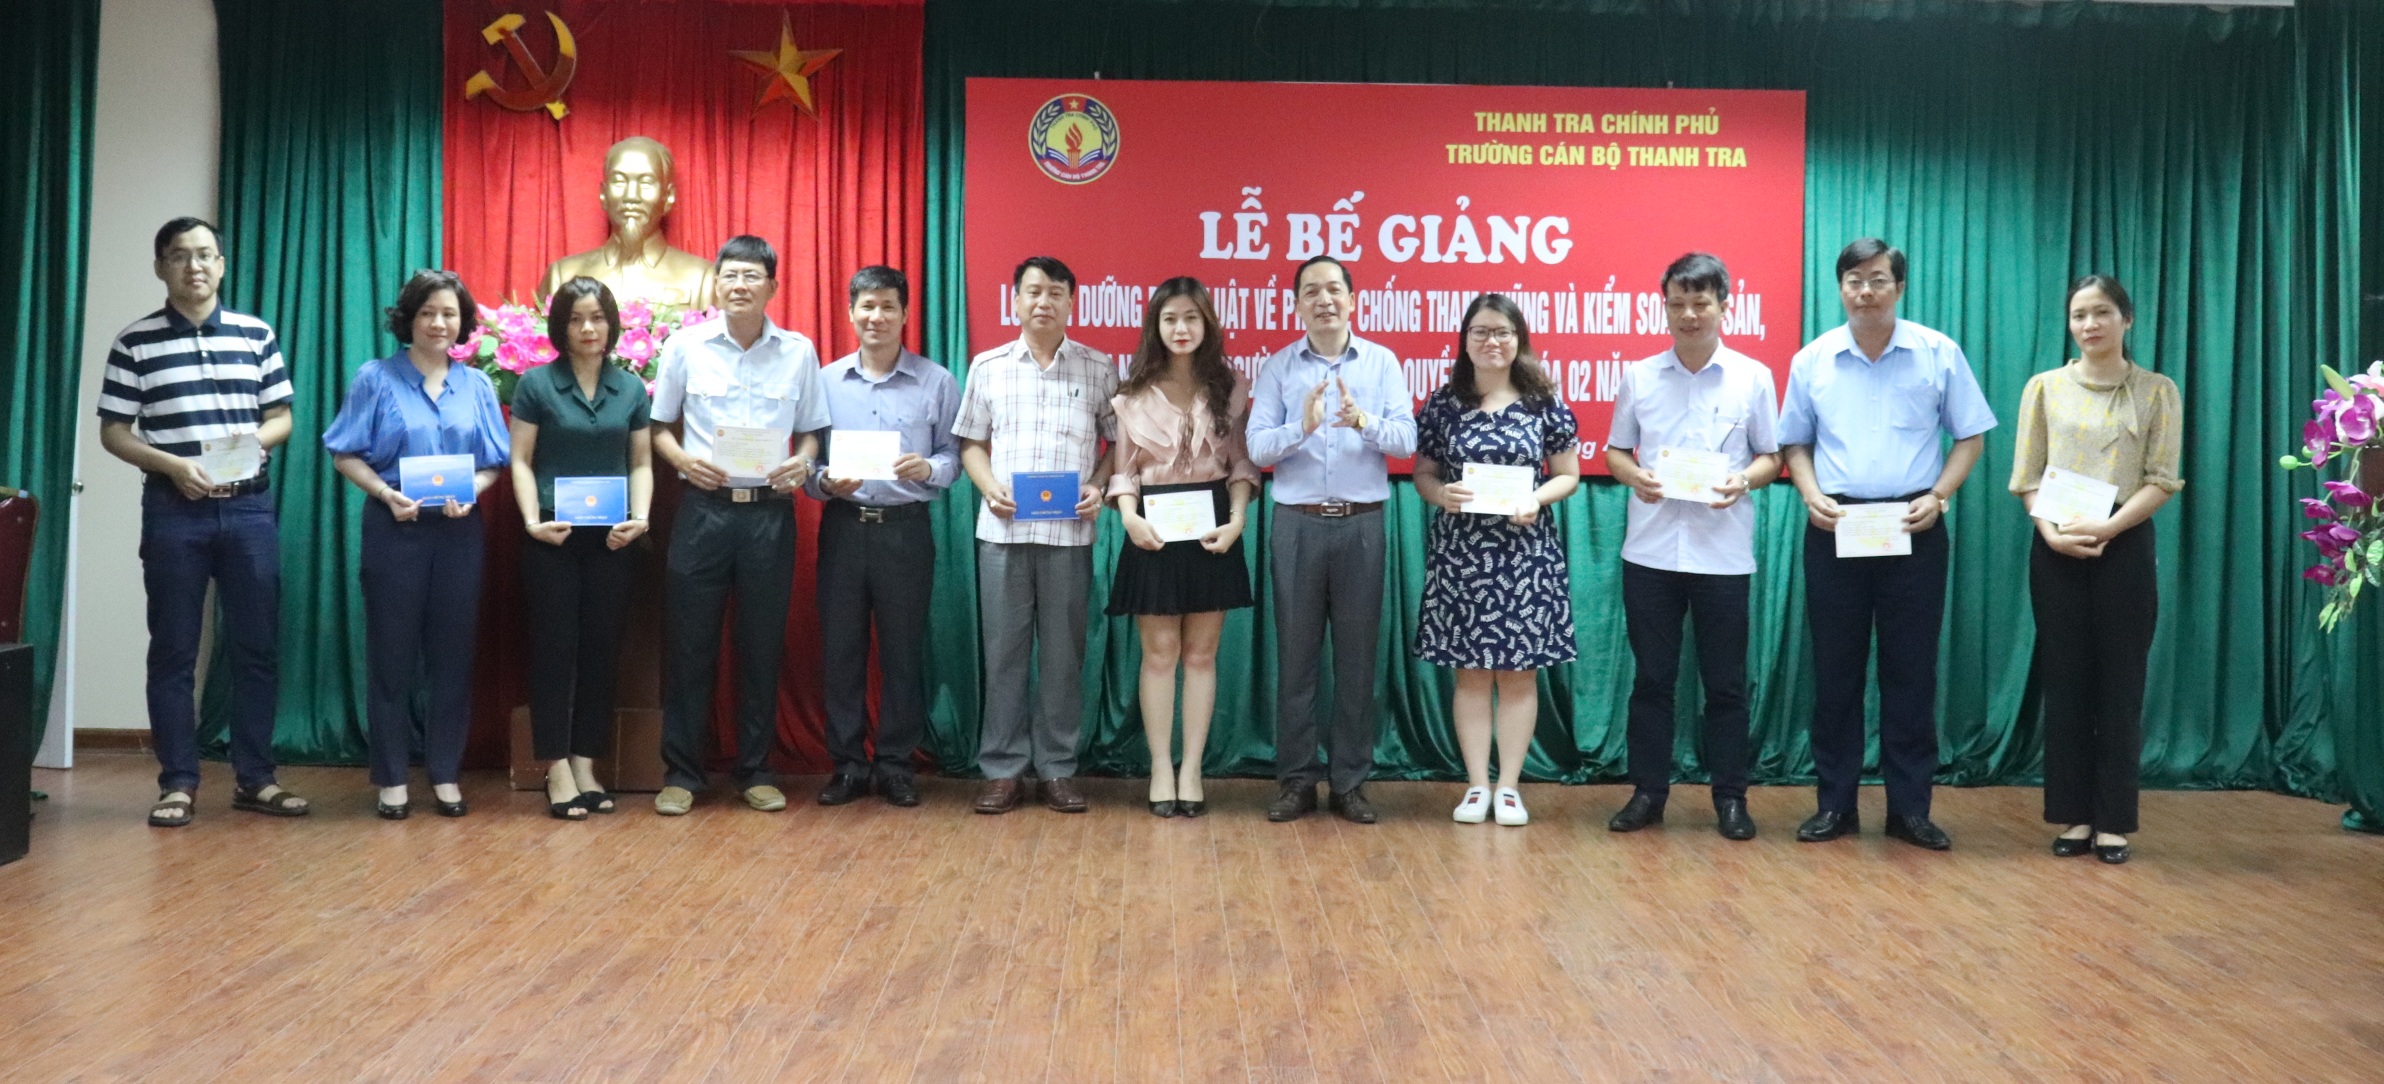 TS Nguyễn Huy Hoàng TTVCC PHT trg CBTT trao chứng nhận hoàn thành khóa học cho học viên